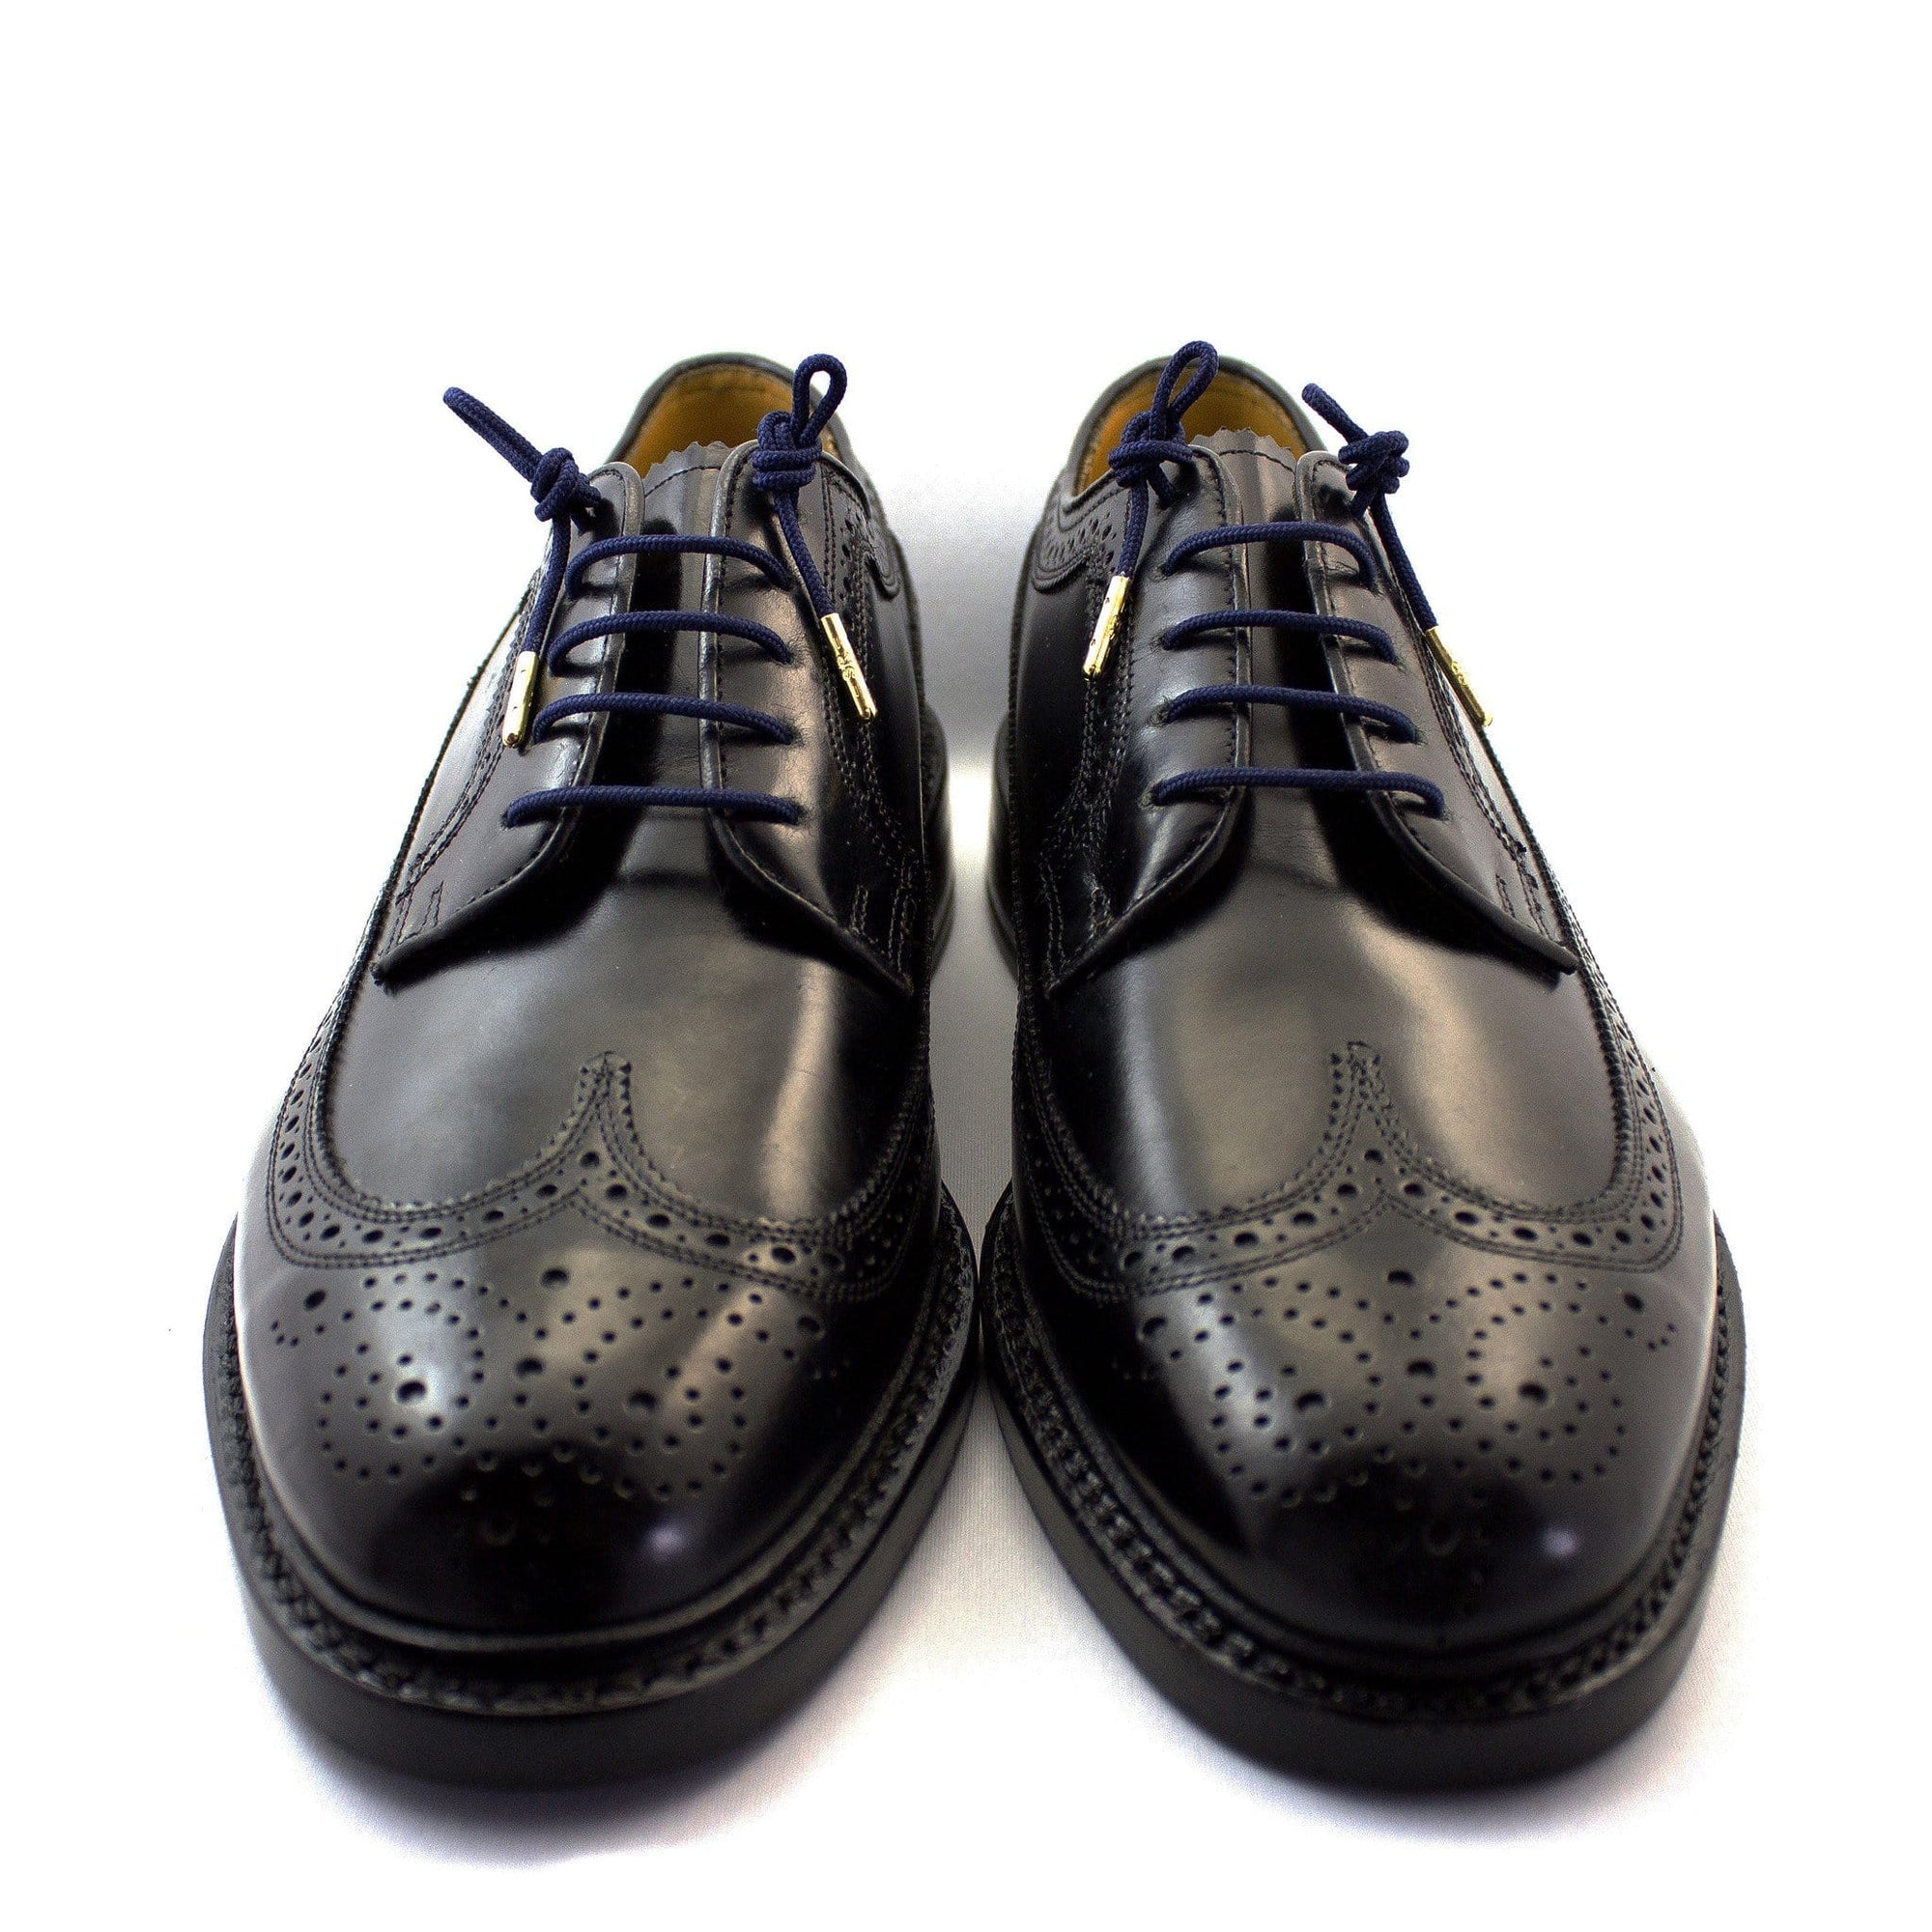 Navy blue laces for dress shoes, Length: 27"/69cm-Stolen Riches